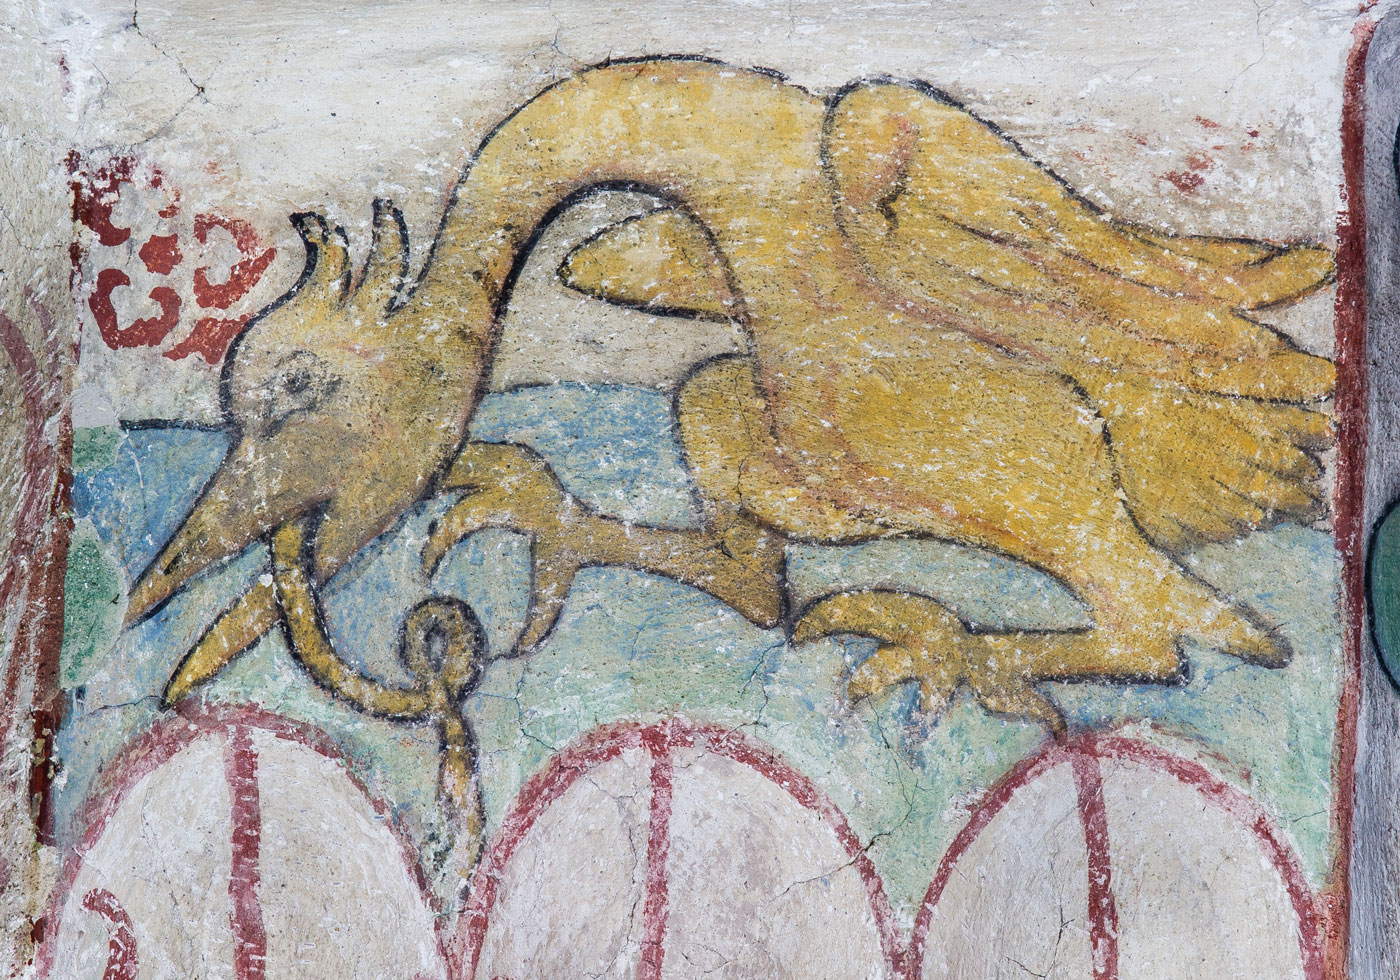 Långhalsad fågel med orm i näbben - Kumla kyrka